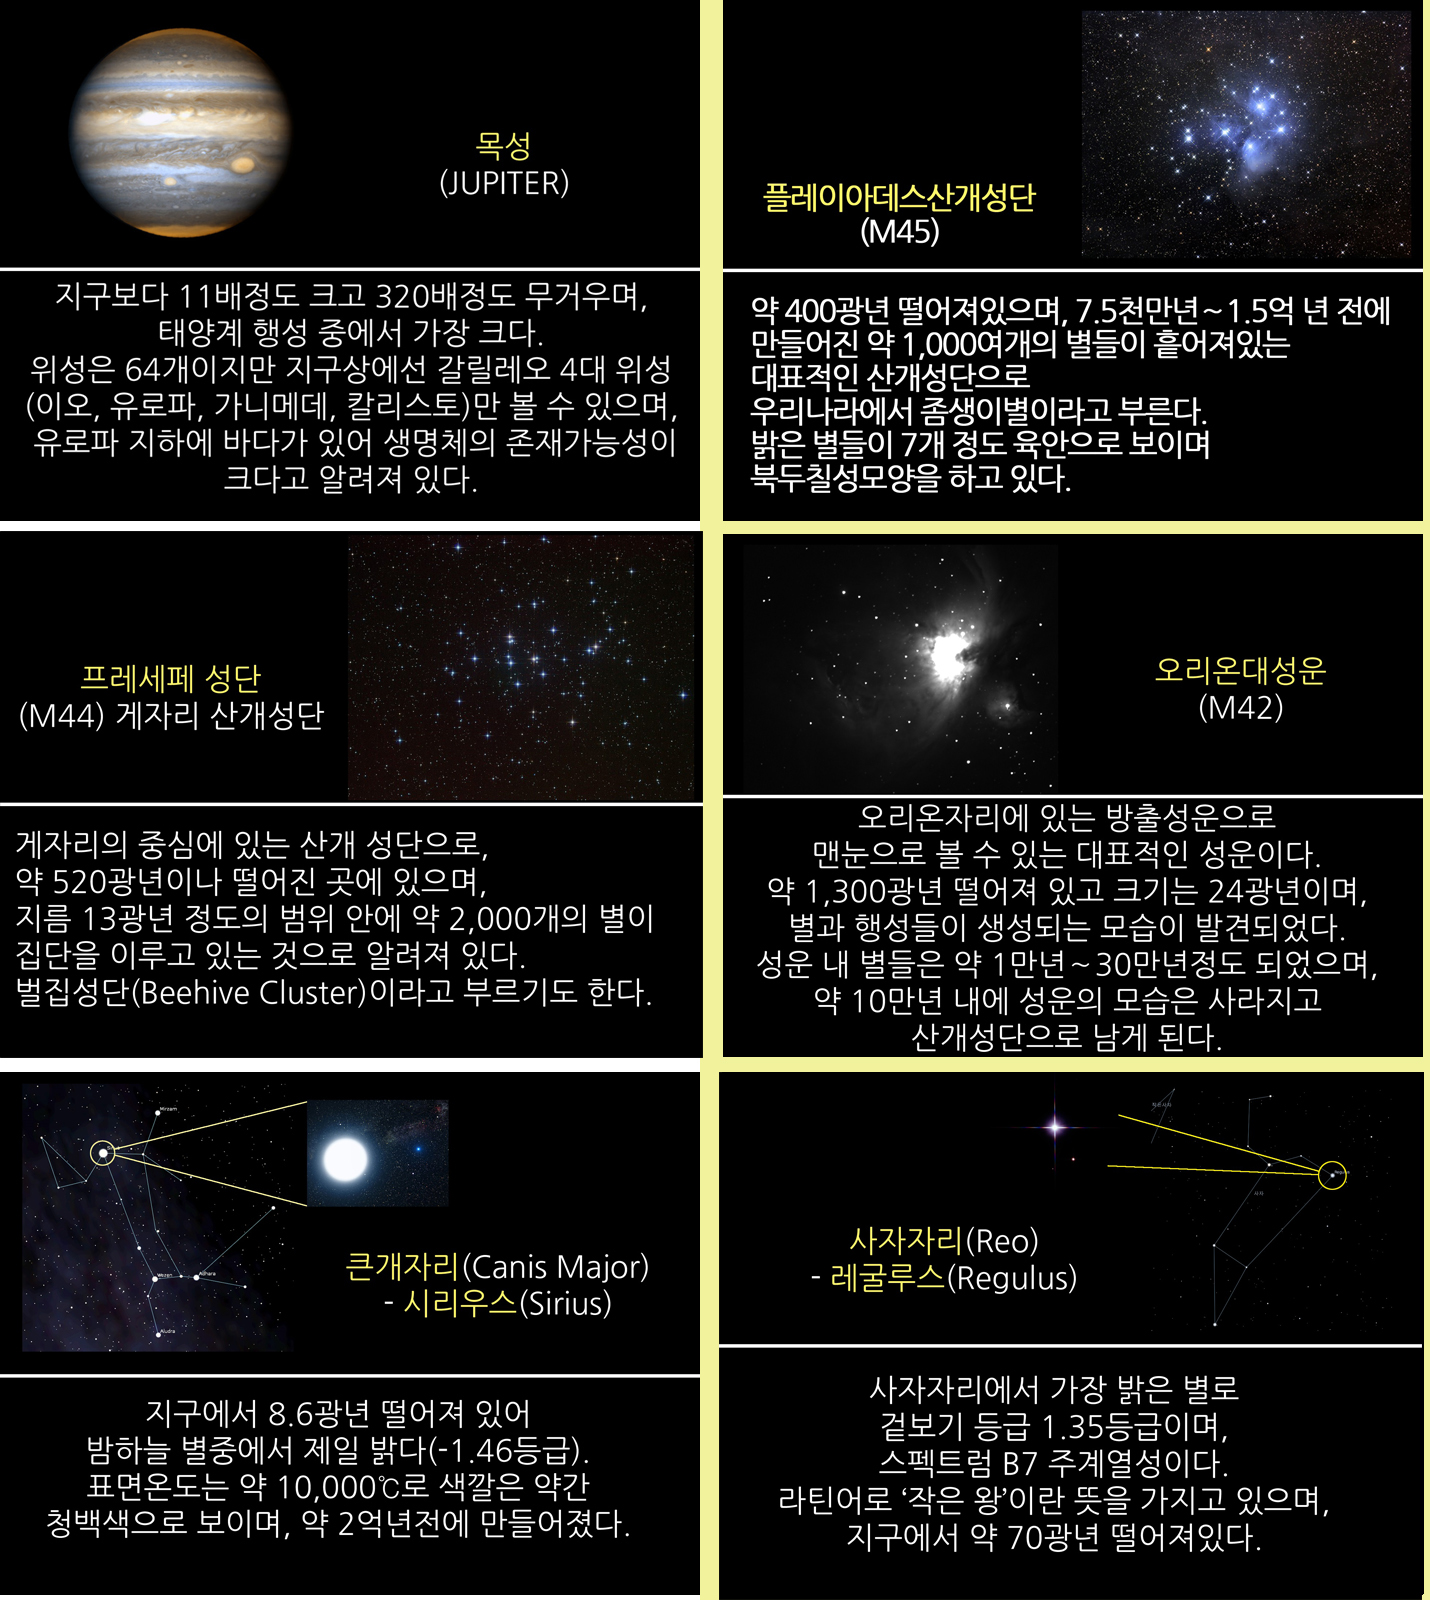 2016년 3월 주요천체관측 대상